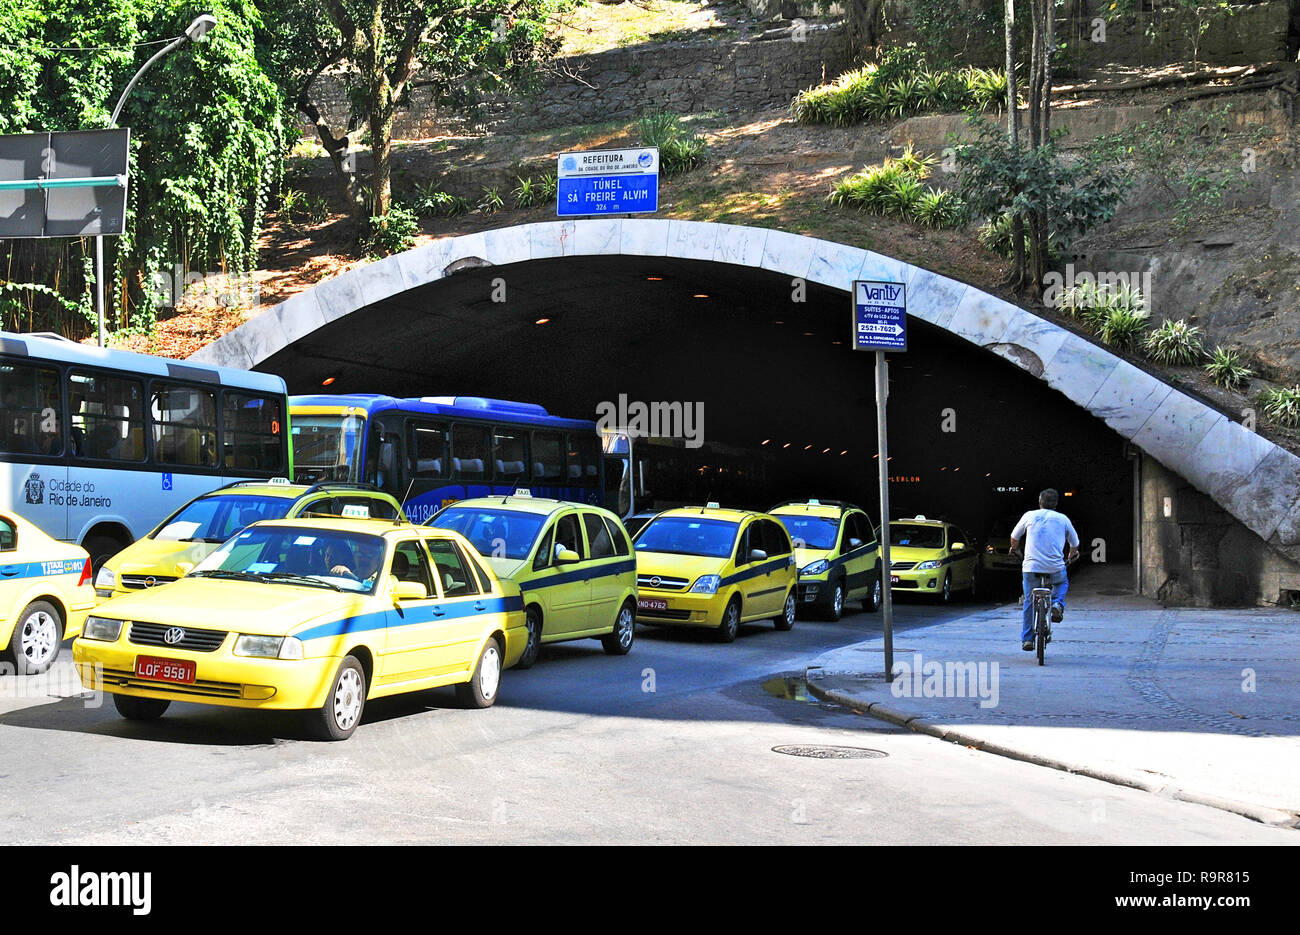 Sa Freire Alvim tunnel, Copacabana, Rio de Janeiro ,Brazil Stock Photo